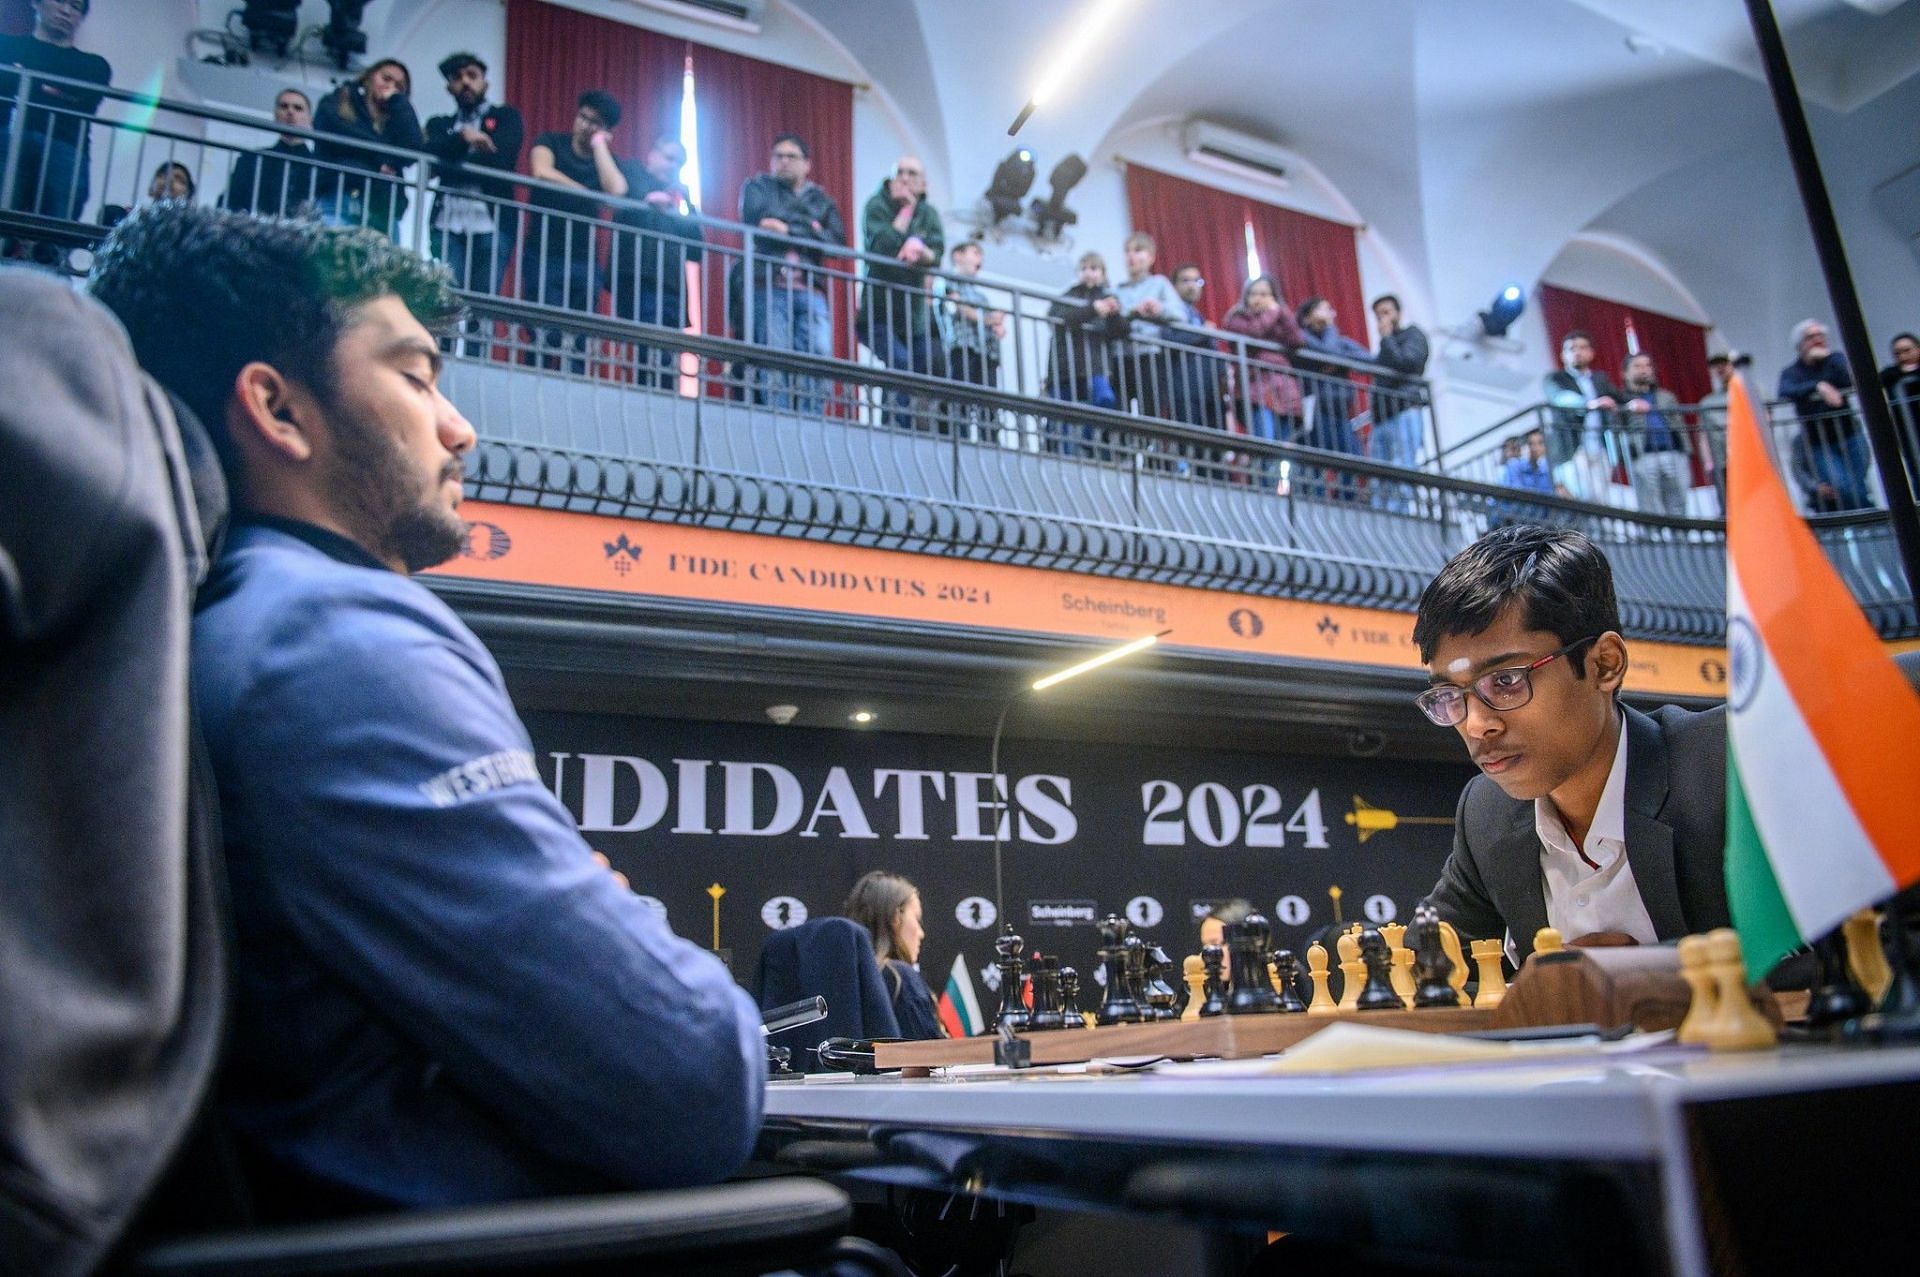 Photo Credit: Michal Walusza, Maria Emelianova via FIDE Chess